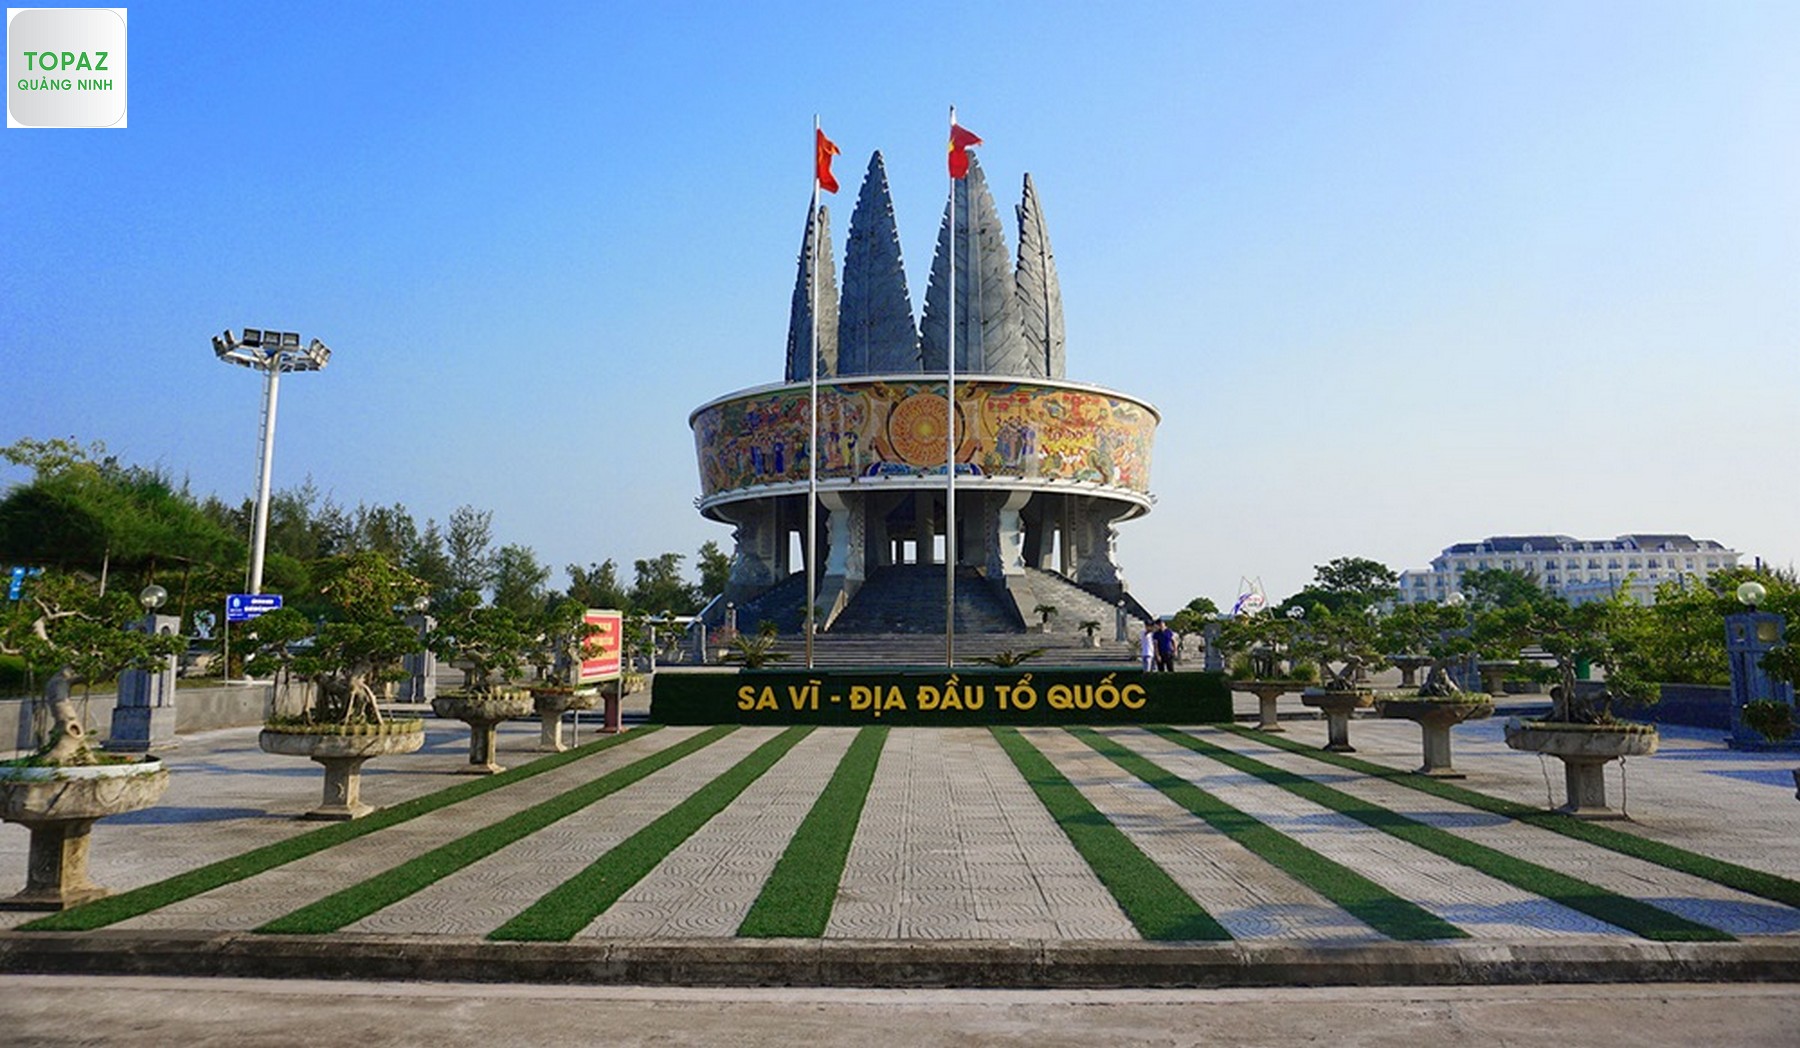 Mũi Sa Vĩ – địa điểm du lịch Móng Cái, Quảng Ninh nổi tiếng